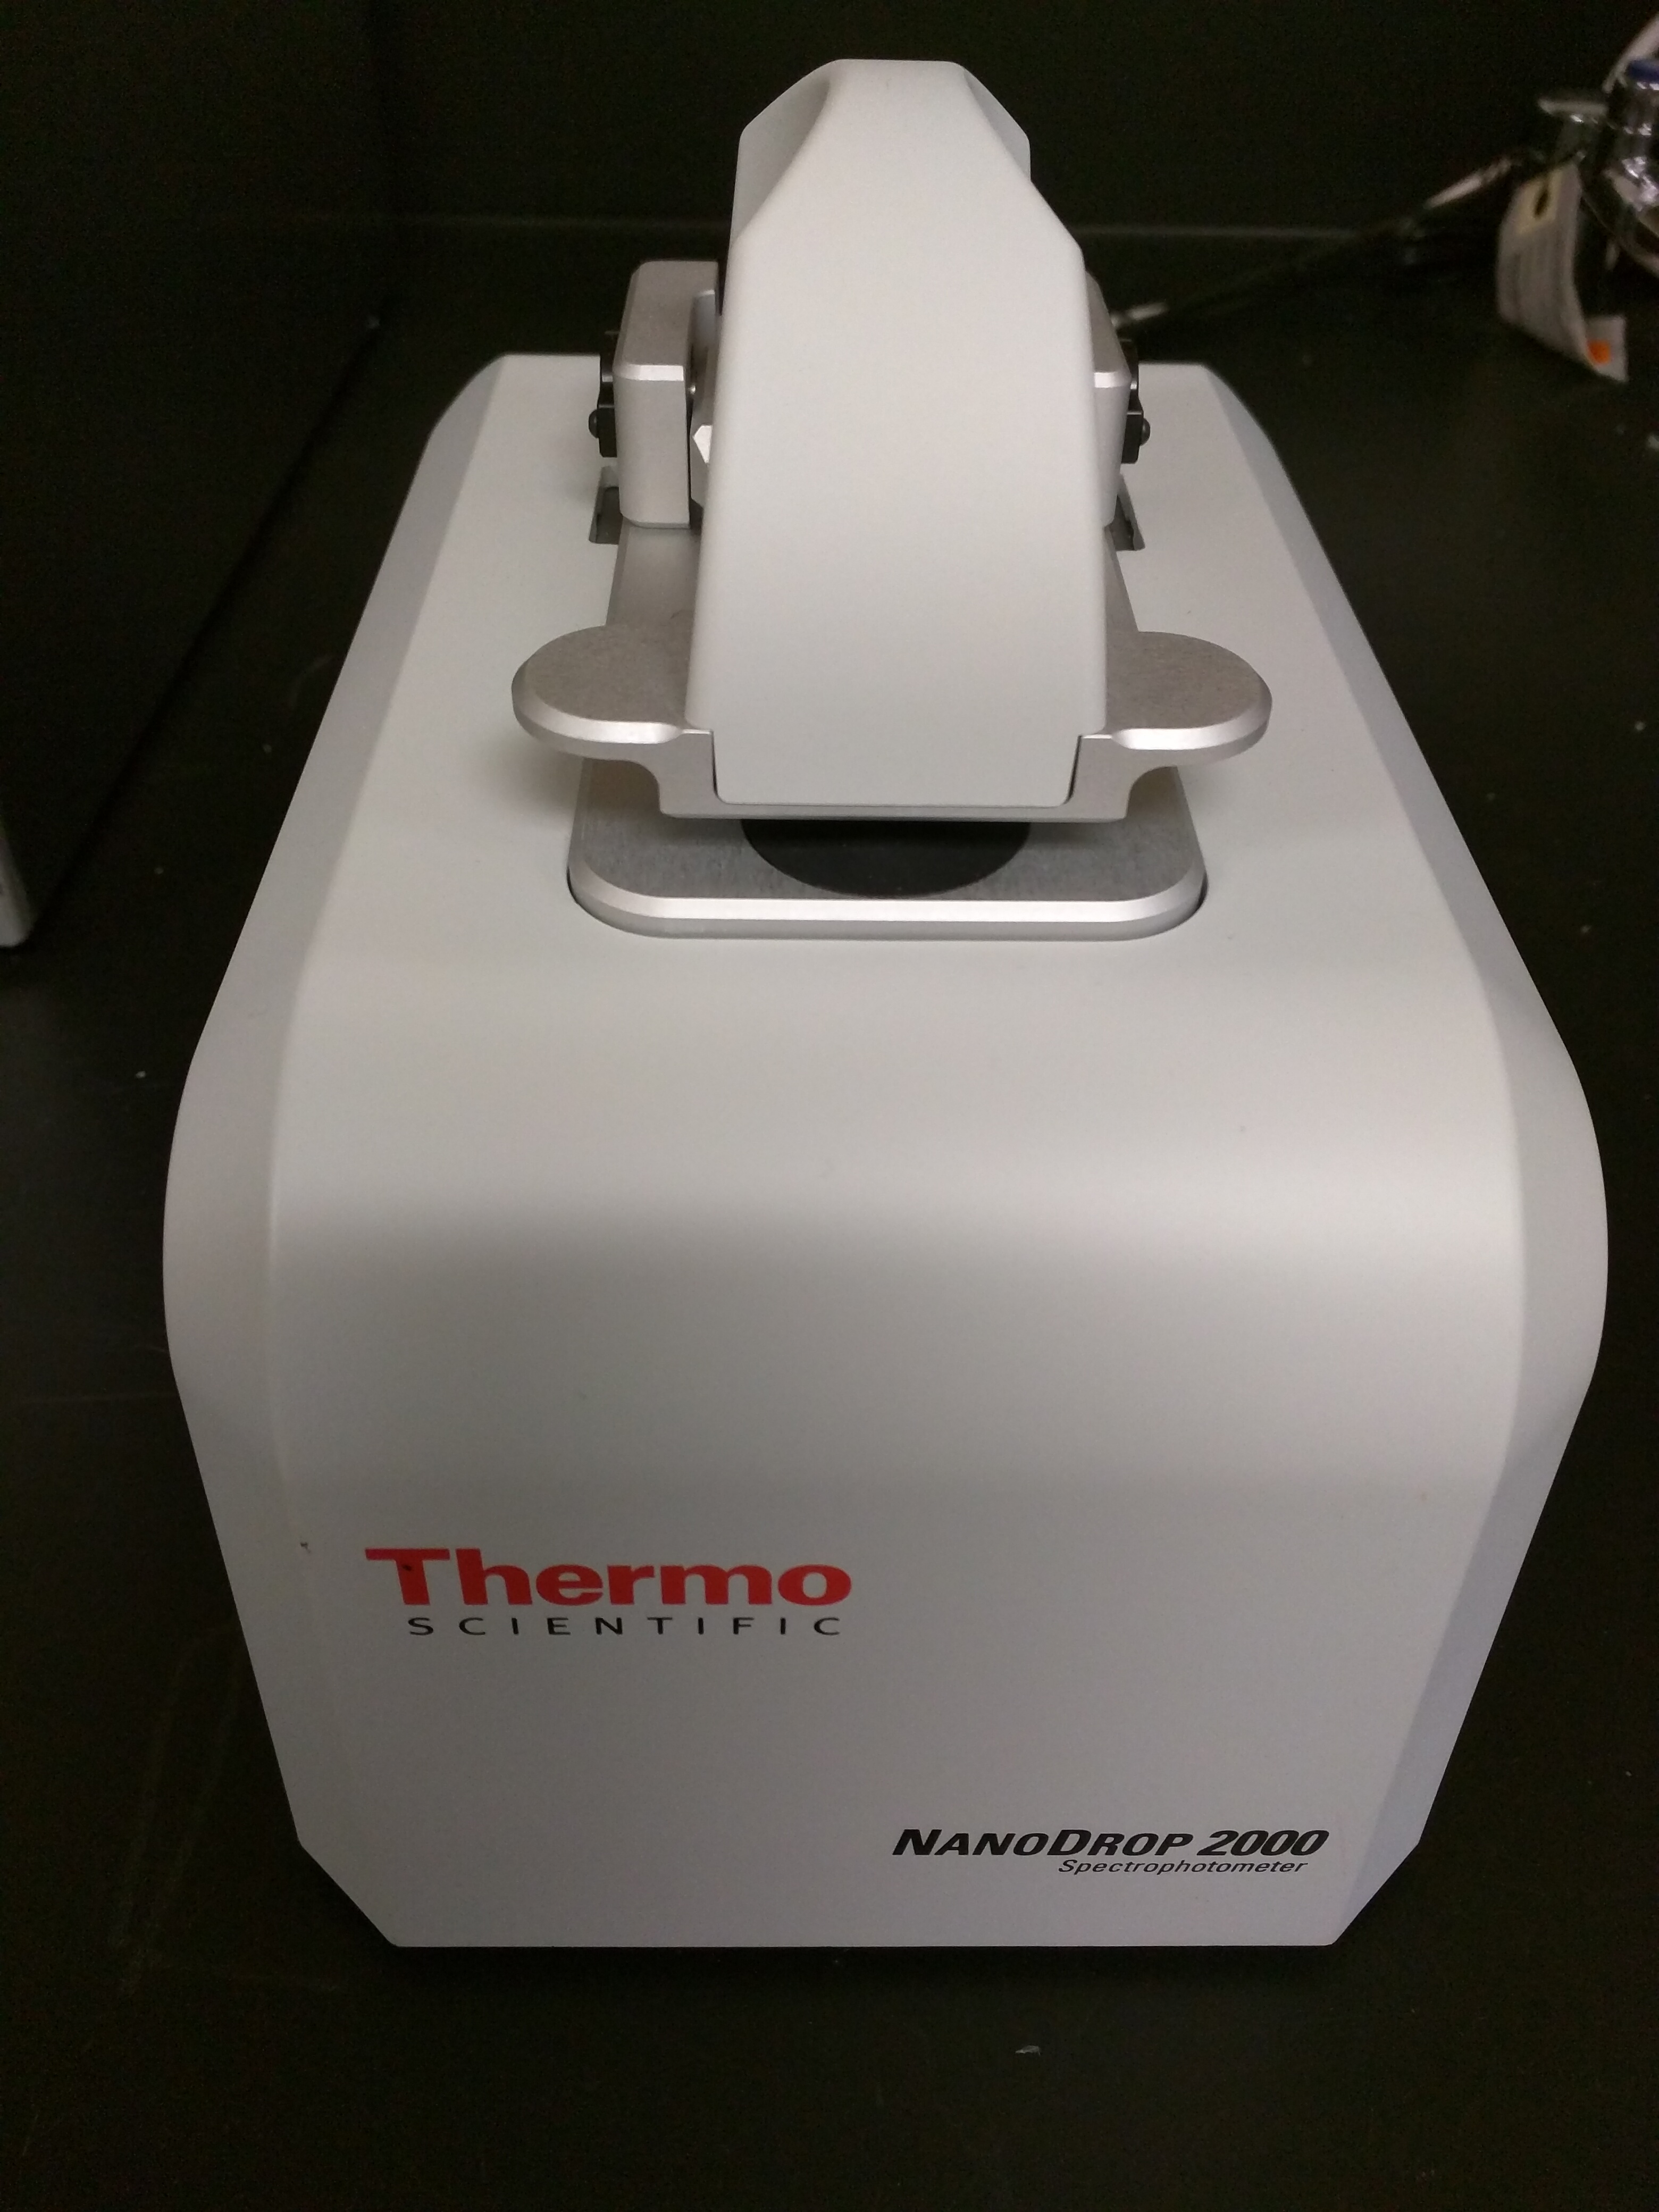 Thermo Scientific NanoDrop 2000